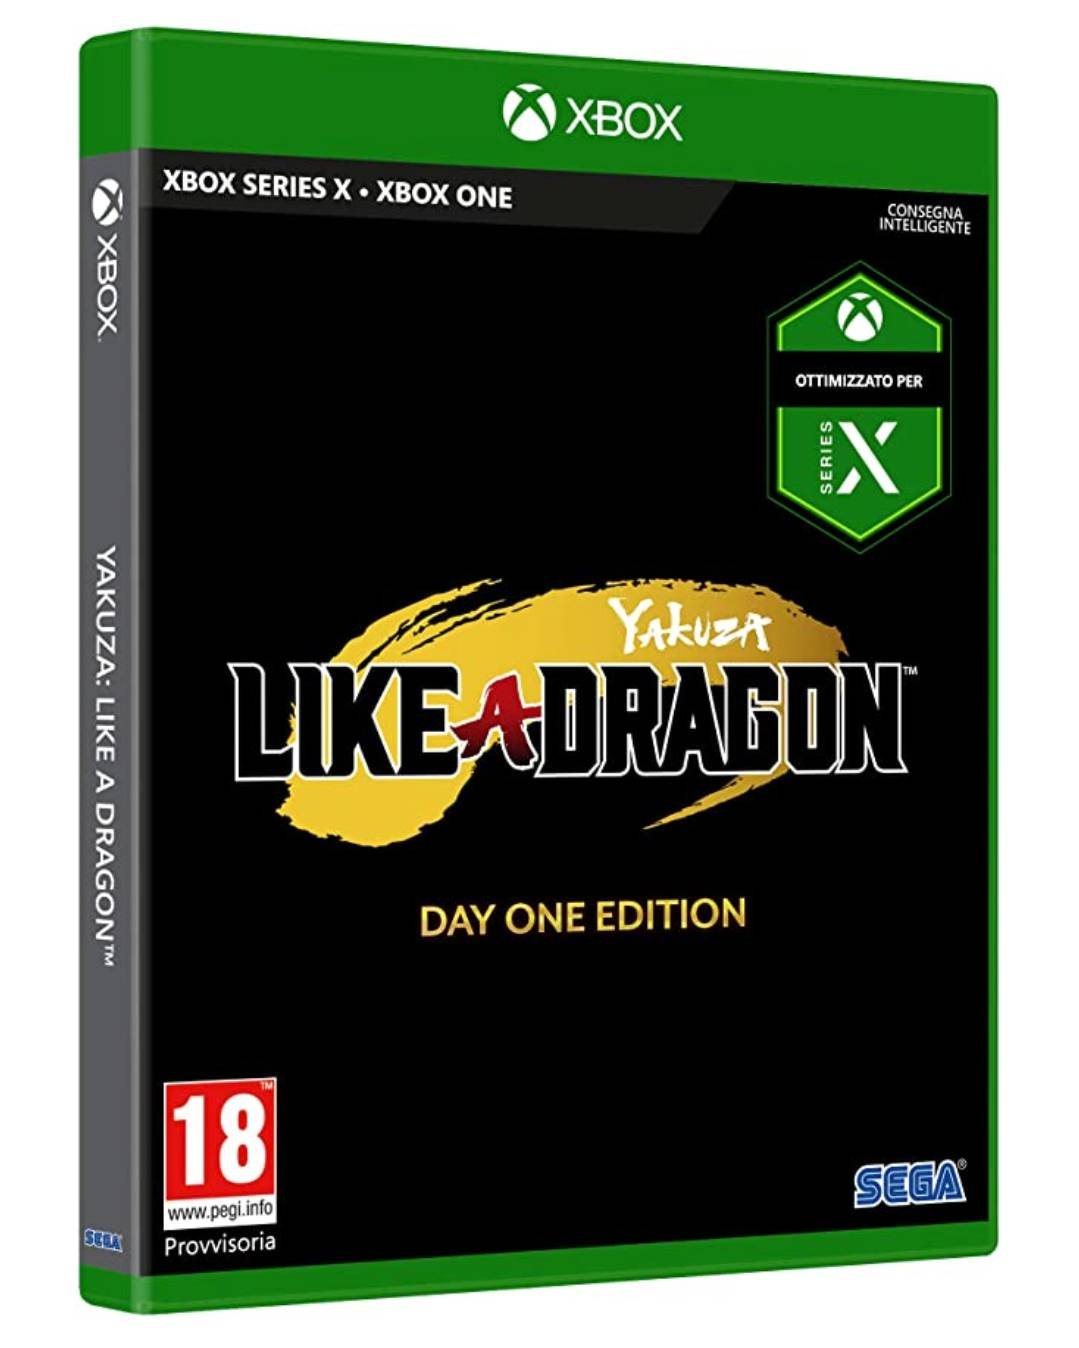 Immagine di Xbox Series X: Amazon svela la copertina dei giochi?